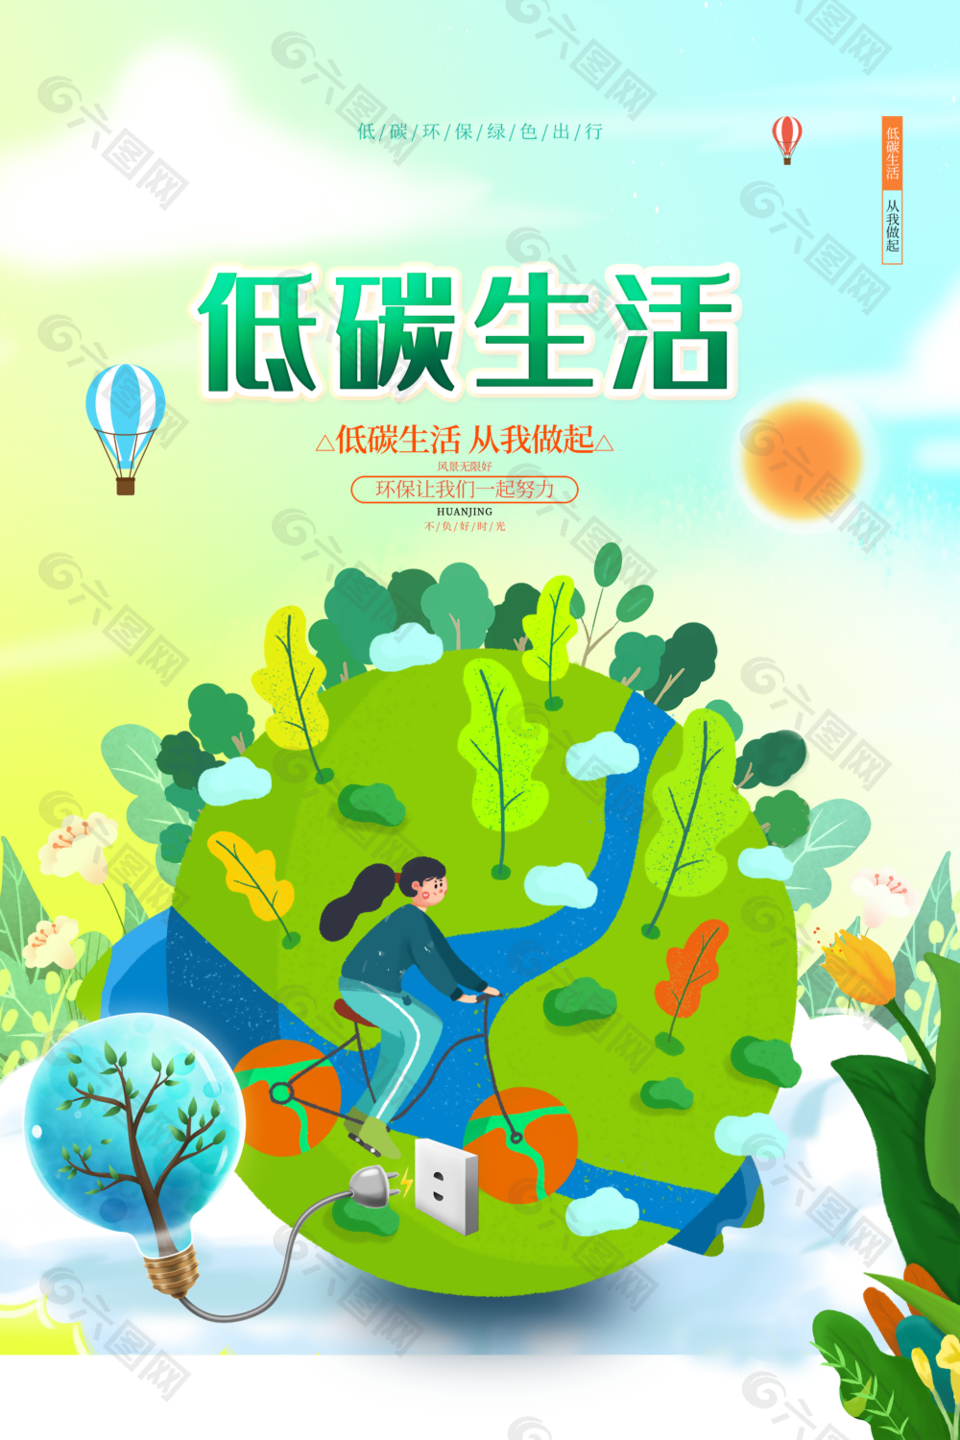 创意卡通绿色低碳生活环保出行海报设计